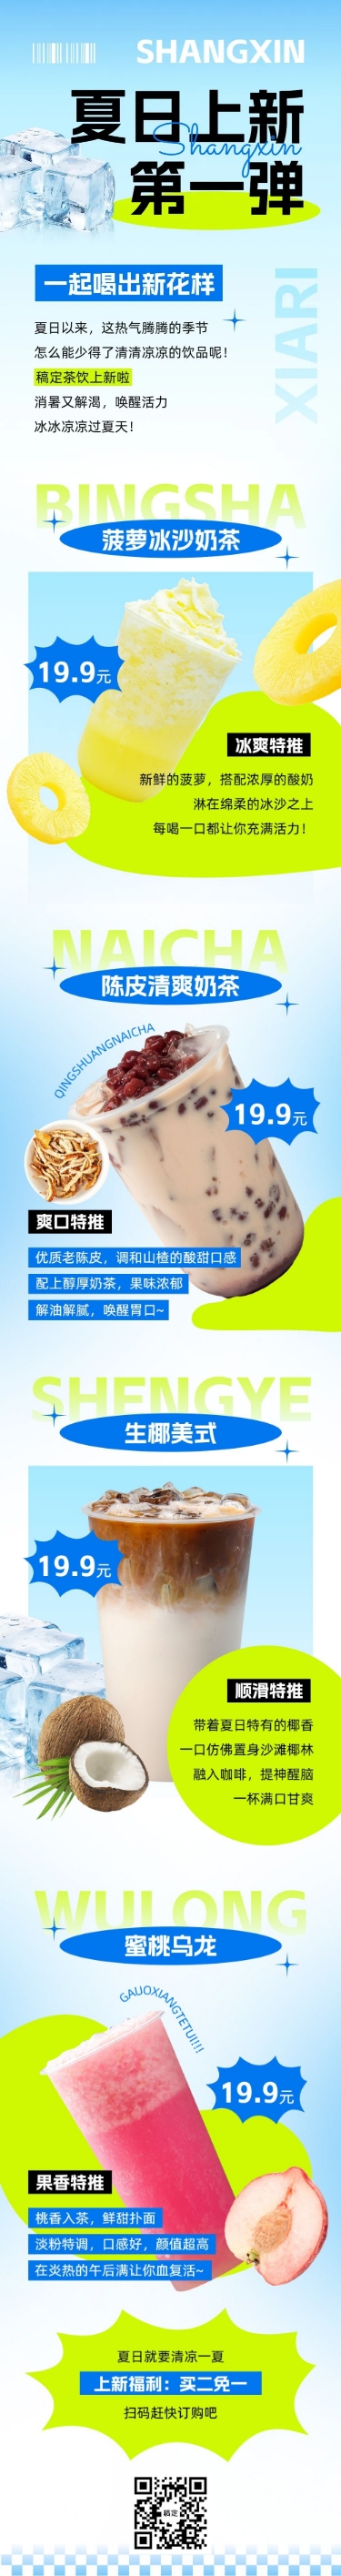 夏季奶茶饮品营销宣传微信公众号文章长图